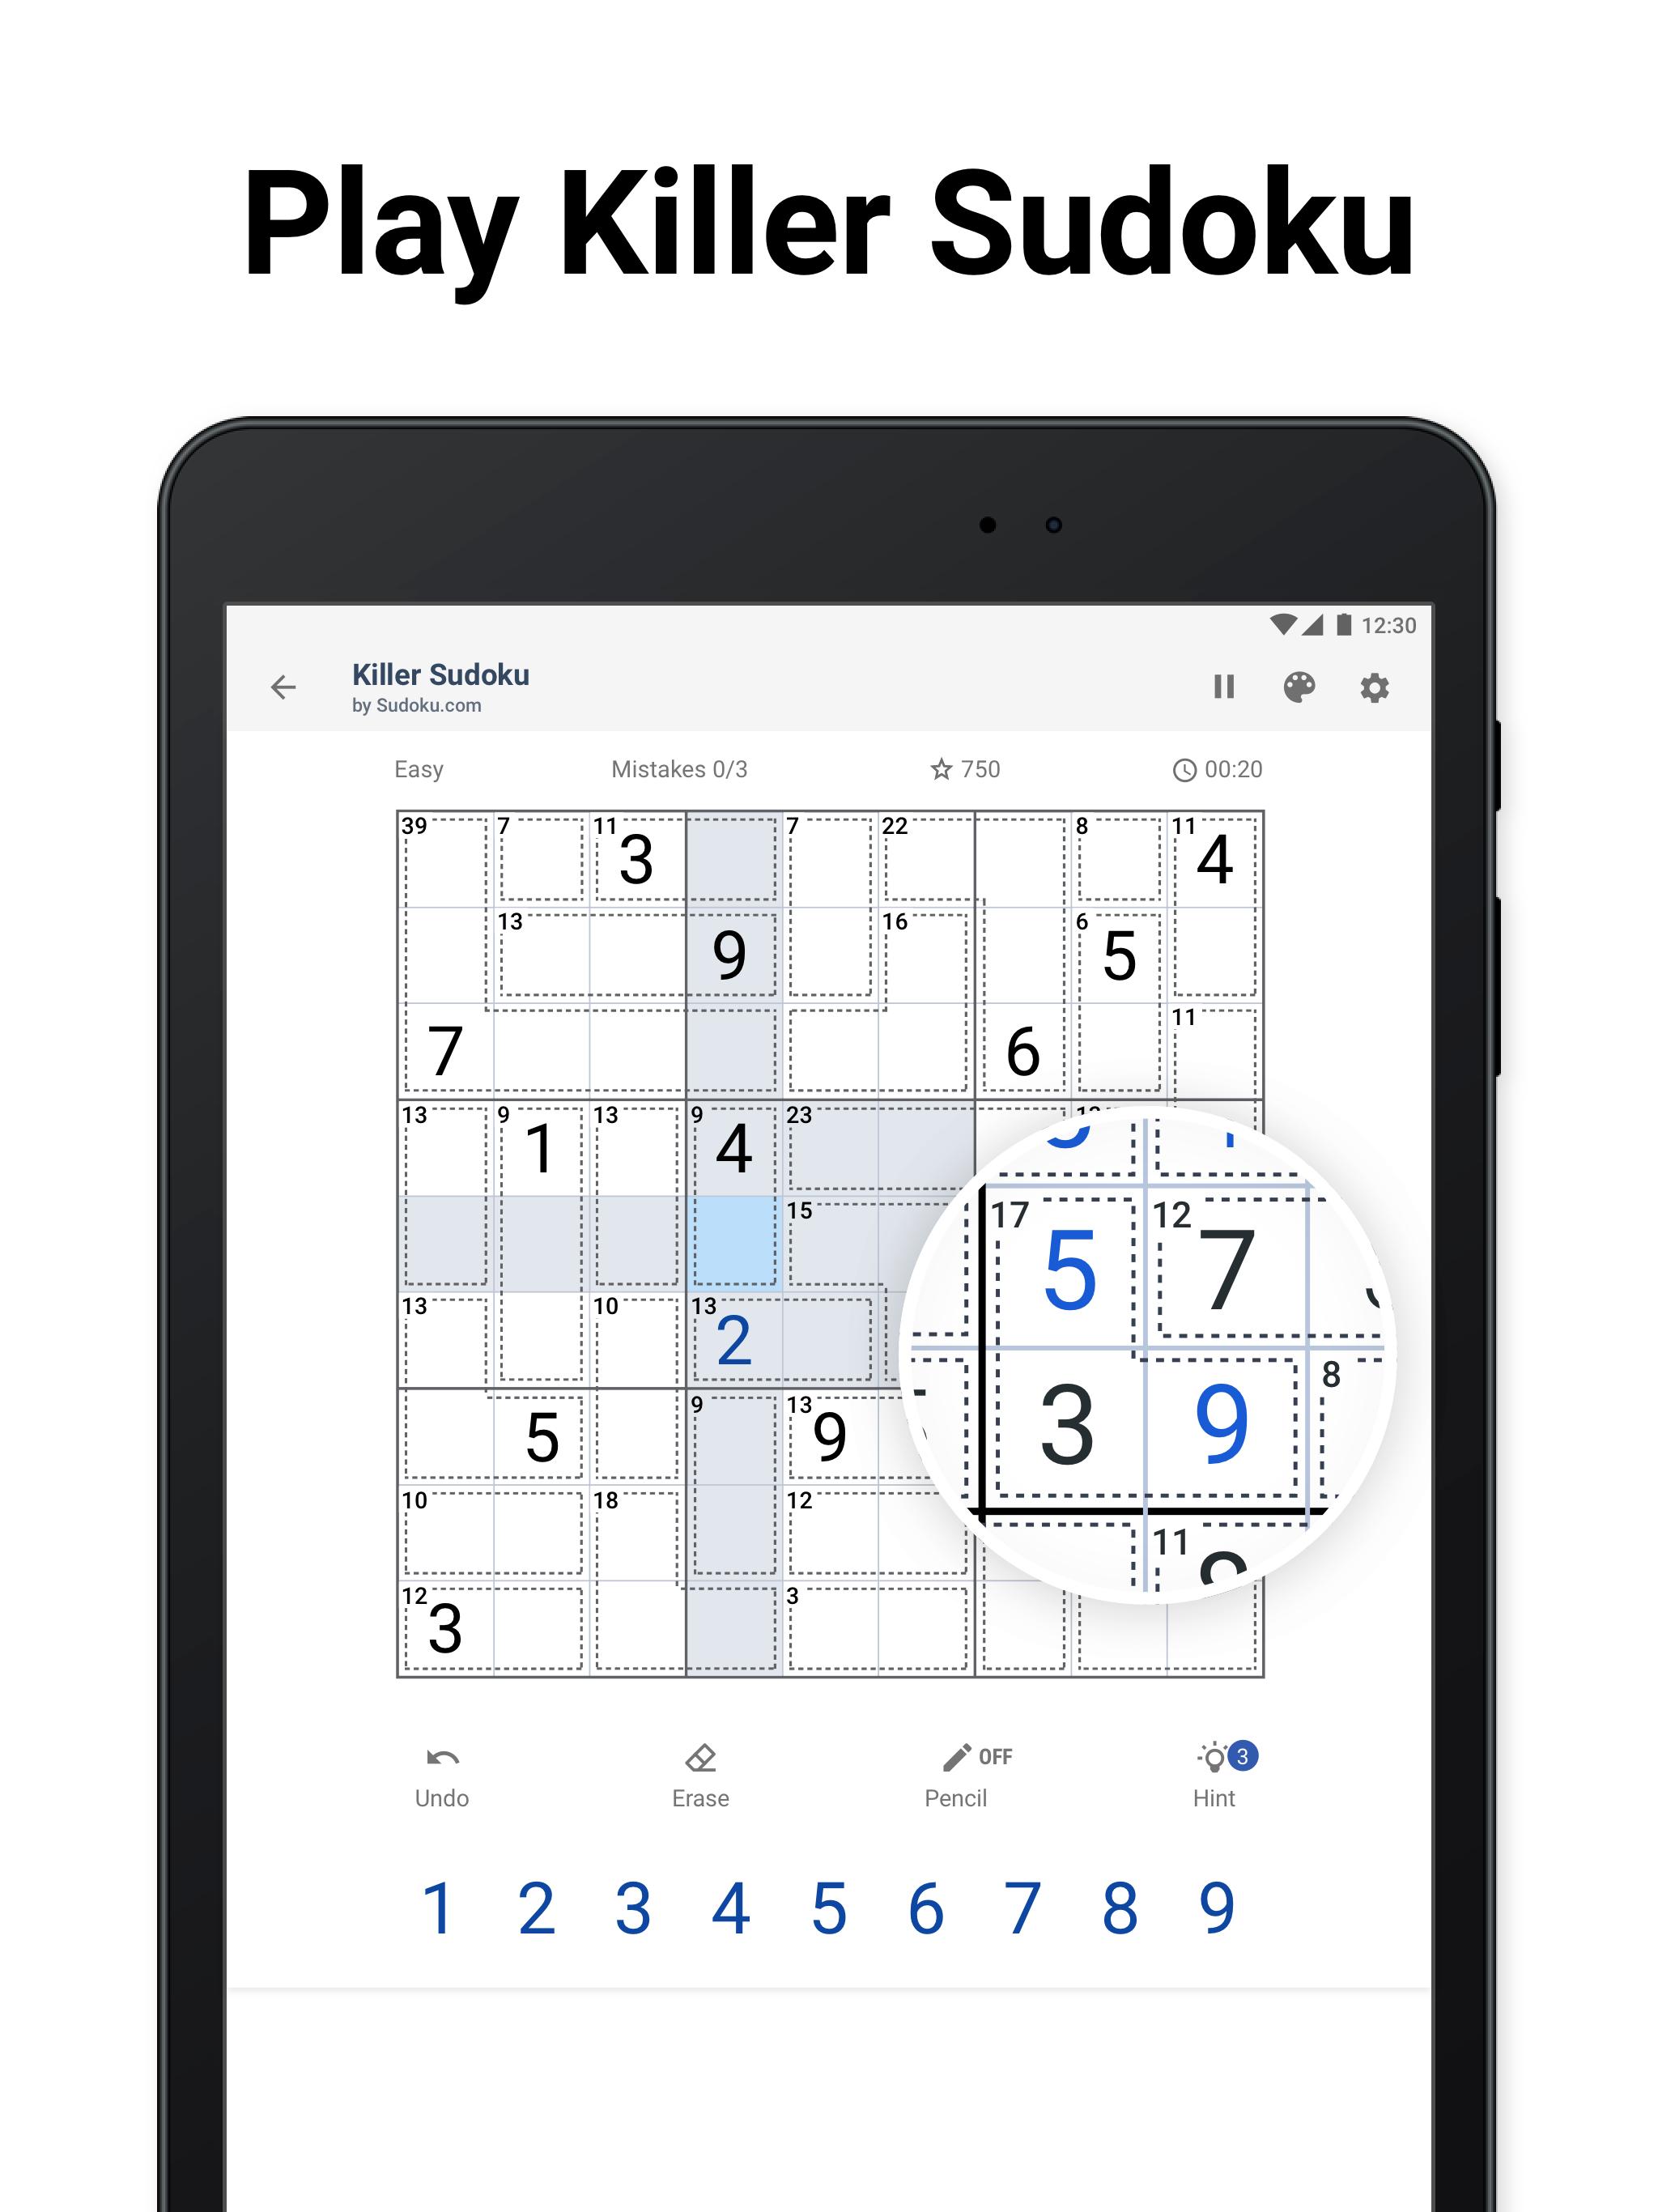 Killer Sudoku by Sudoku.com - Free Logic Puzzles 1.2.1 Screenshot 9